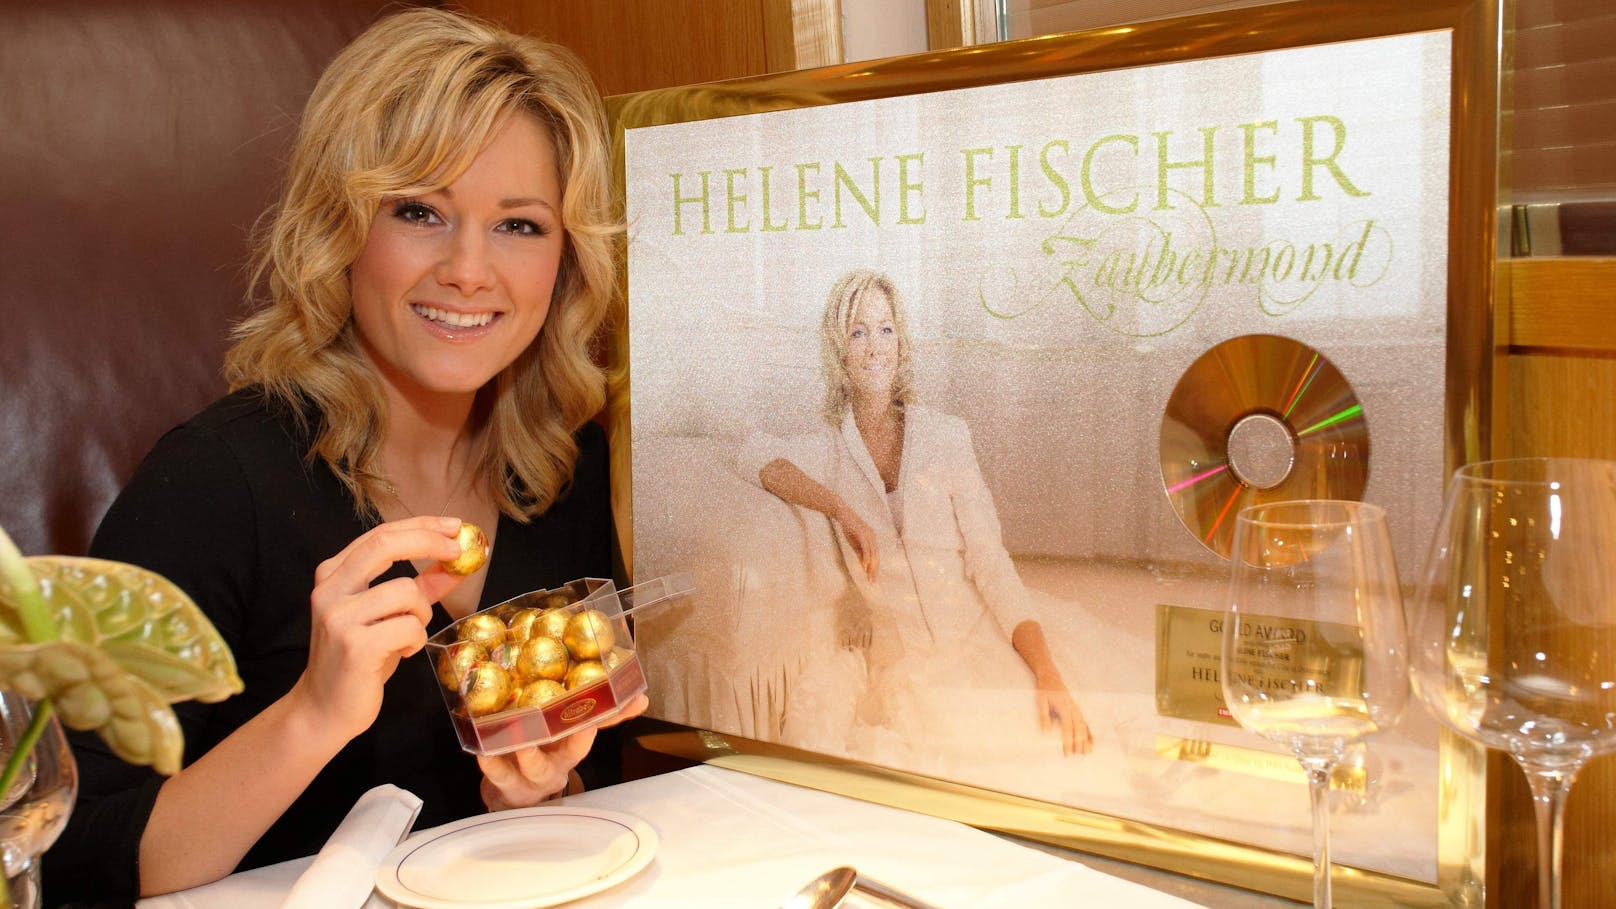 <strong>Helene Fischer</strong> bekommt Gold
und Platin für ihre CD "Zaubermond" im "Das Triest" überreicht (2008)